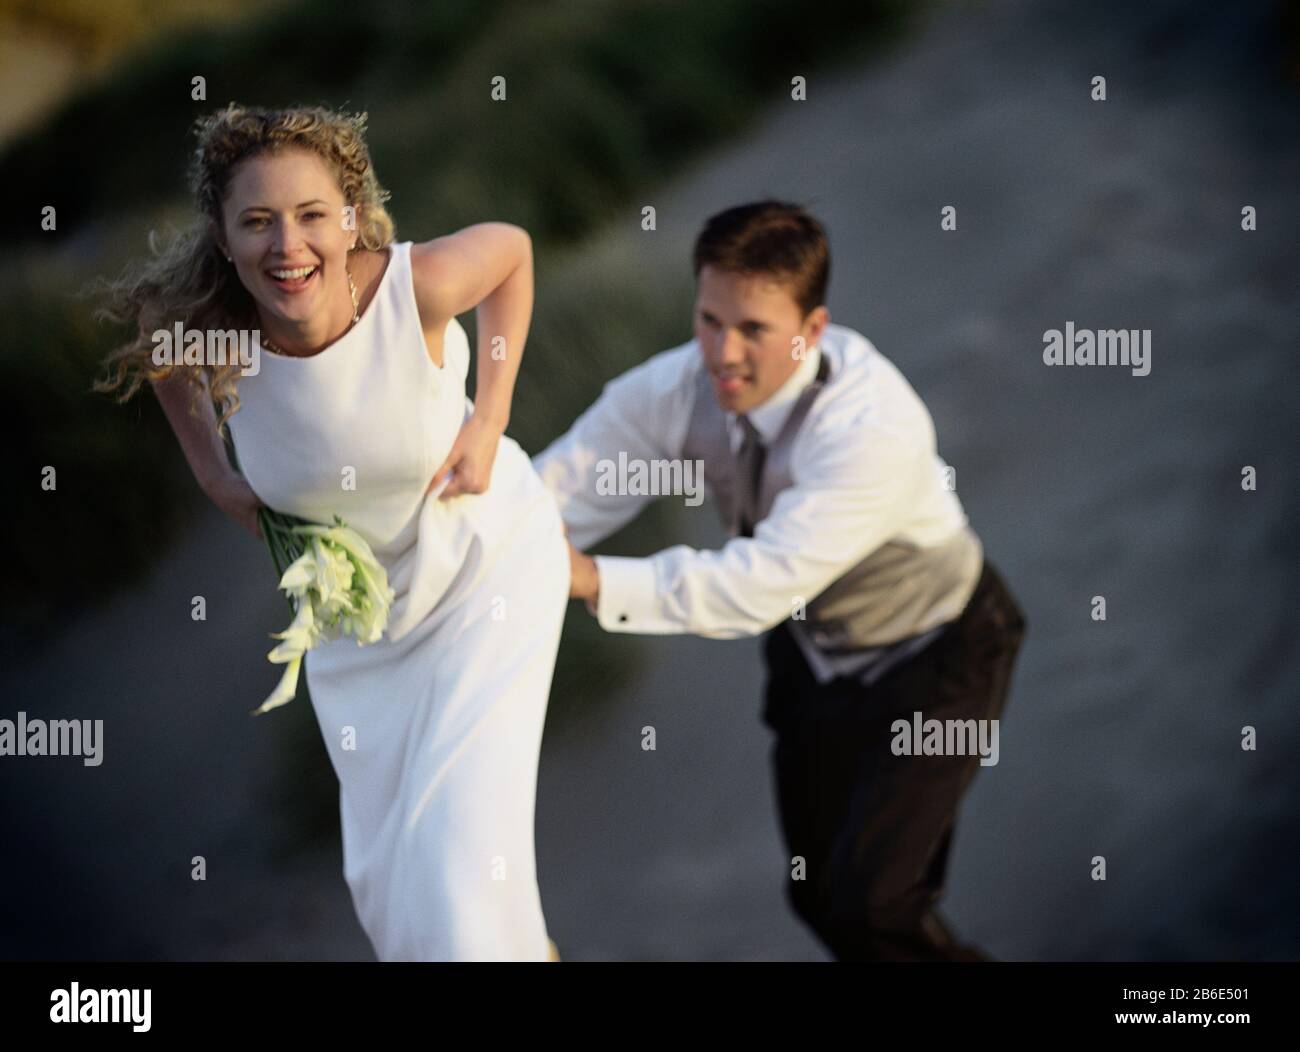 Ein verspieltes Paar, das einige leichte Momente teilt. Stockfoto